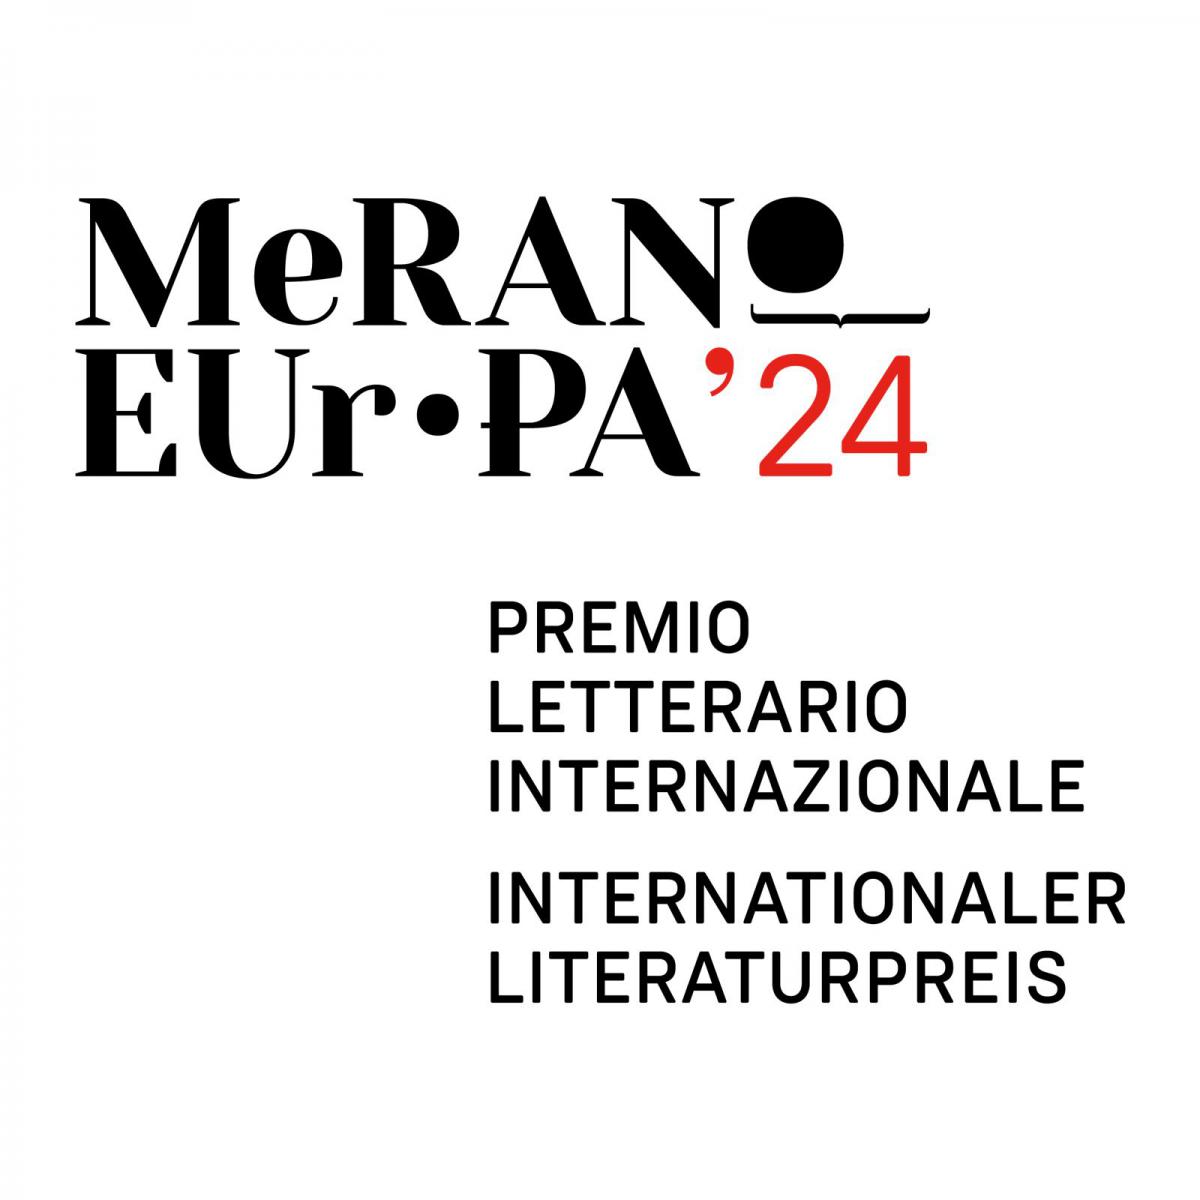 Premio Letterario Internazionale Merano Europa